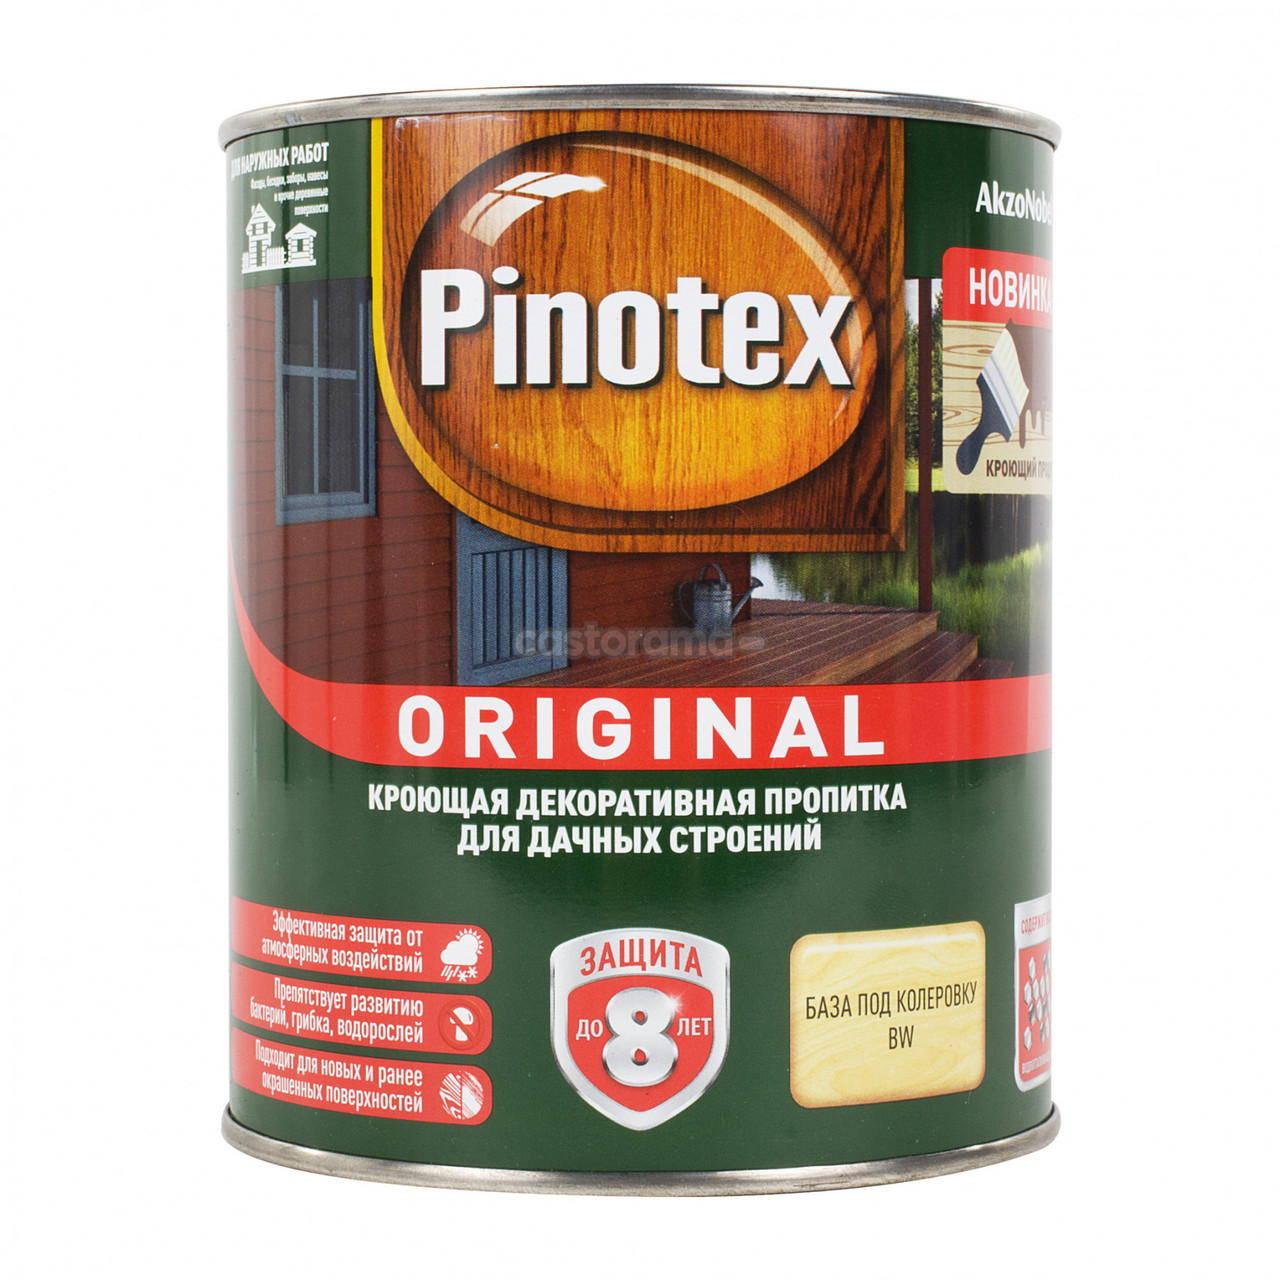 Пропитка Pinotex Original кроющая для деревянных поверхностей CLR, 0.84